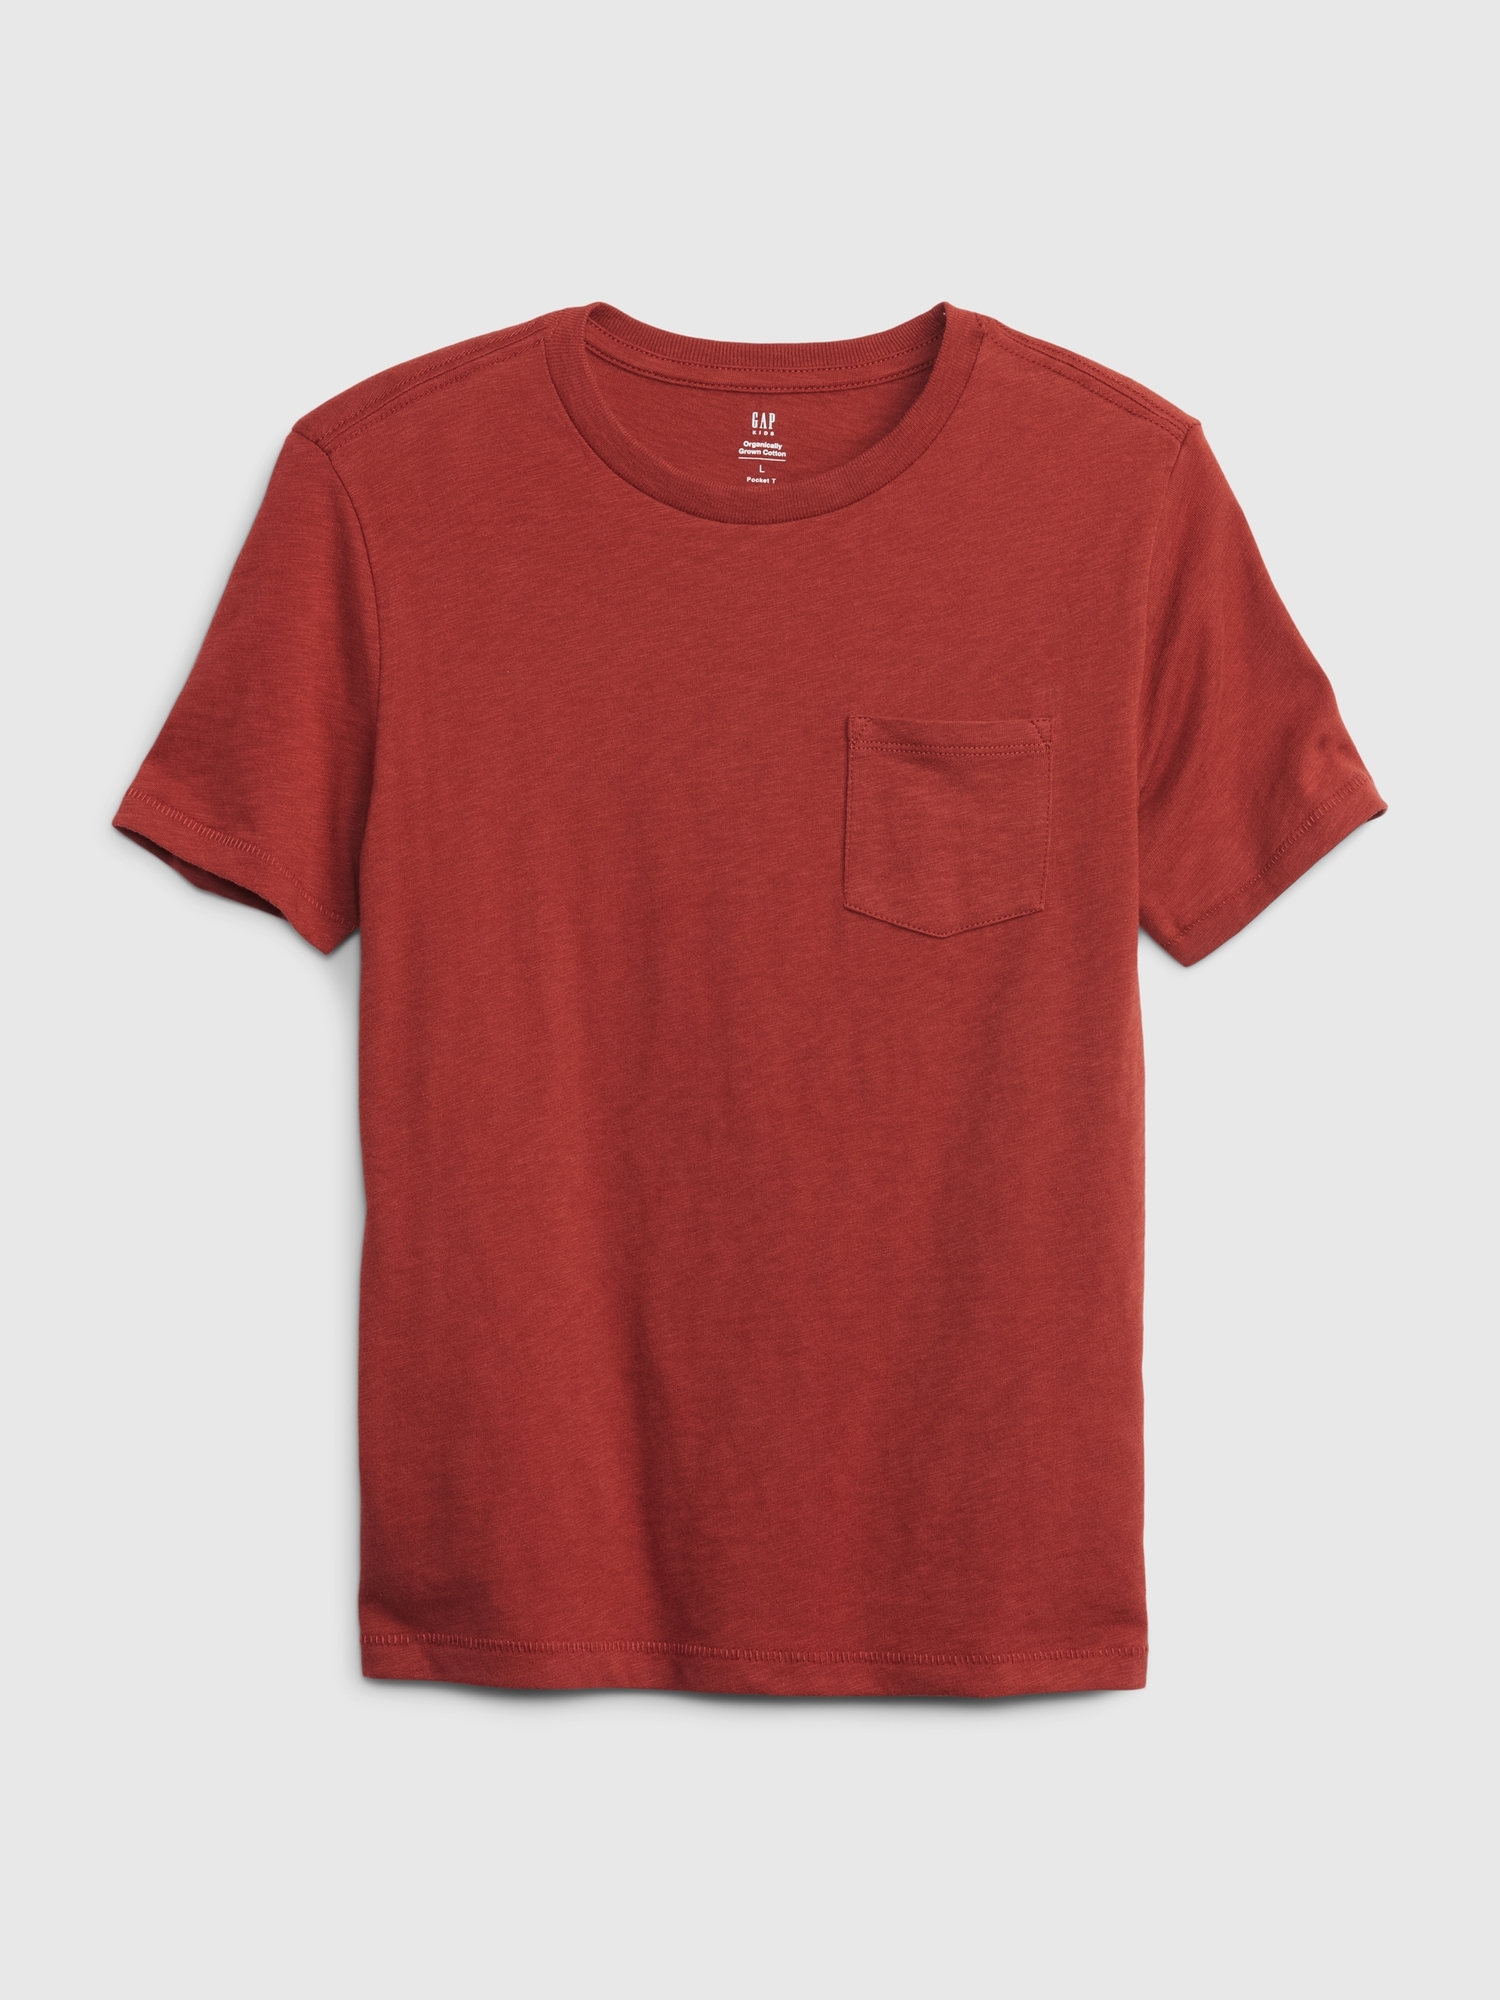 Gap Kids 100% Organic Cotton Pocket T-Shirt red. 1